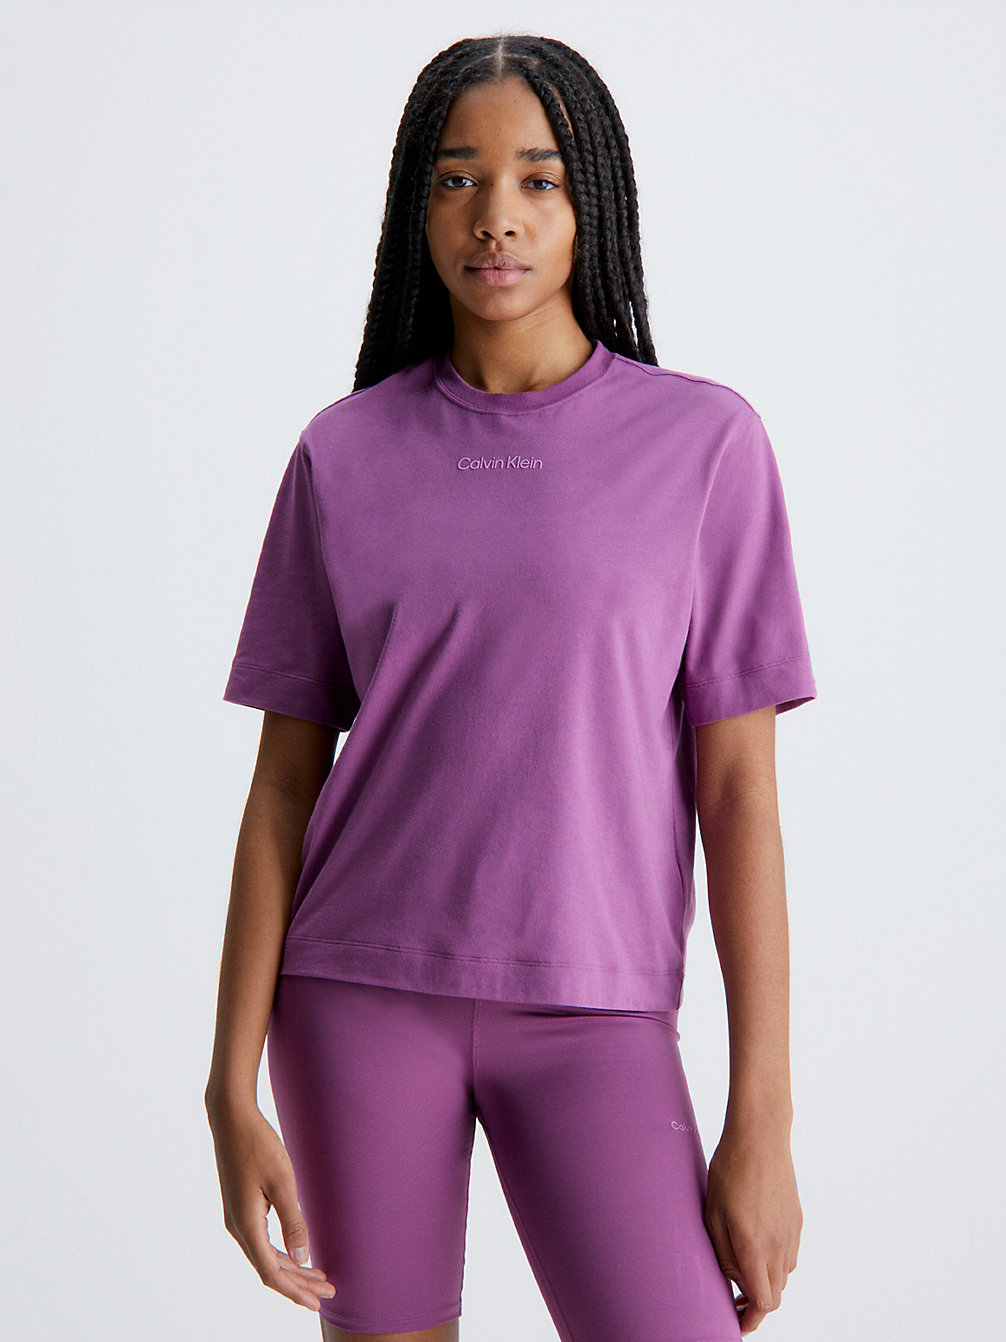 AMETHYST Gym T-Shirt undefined women Calvin Klein